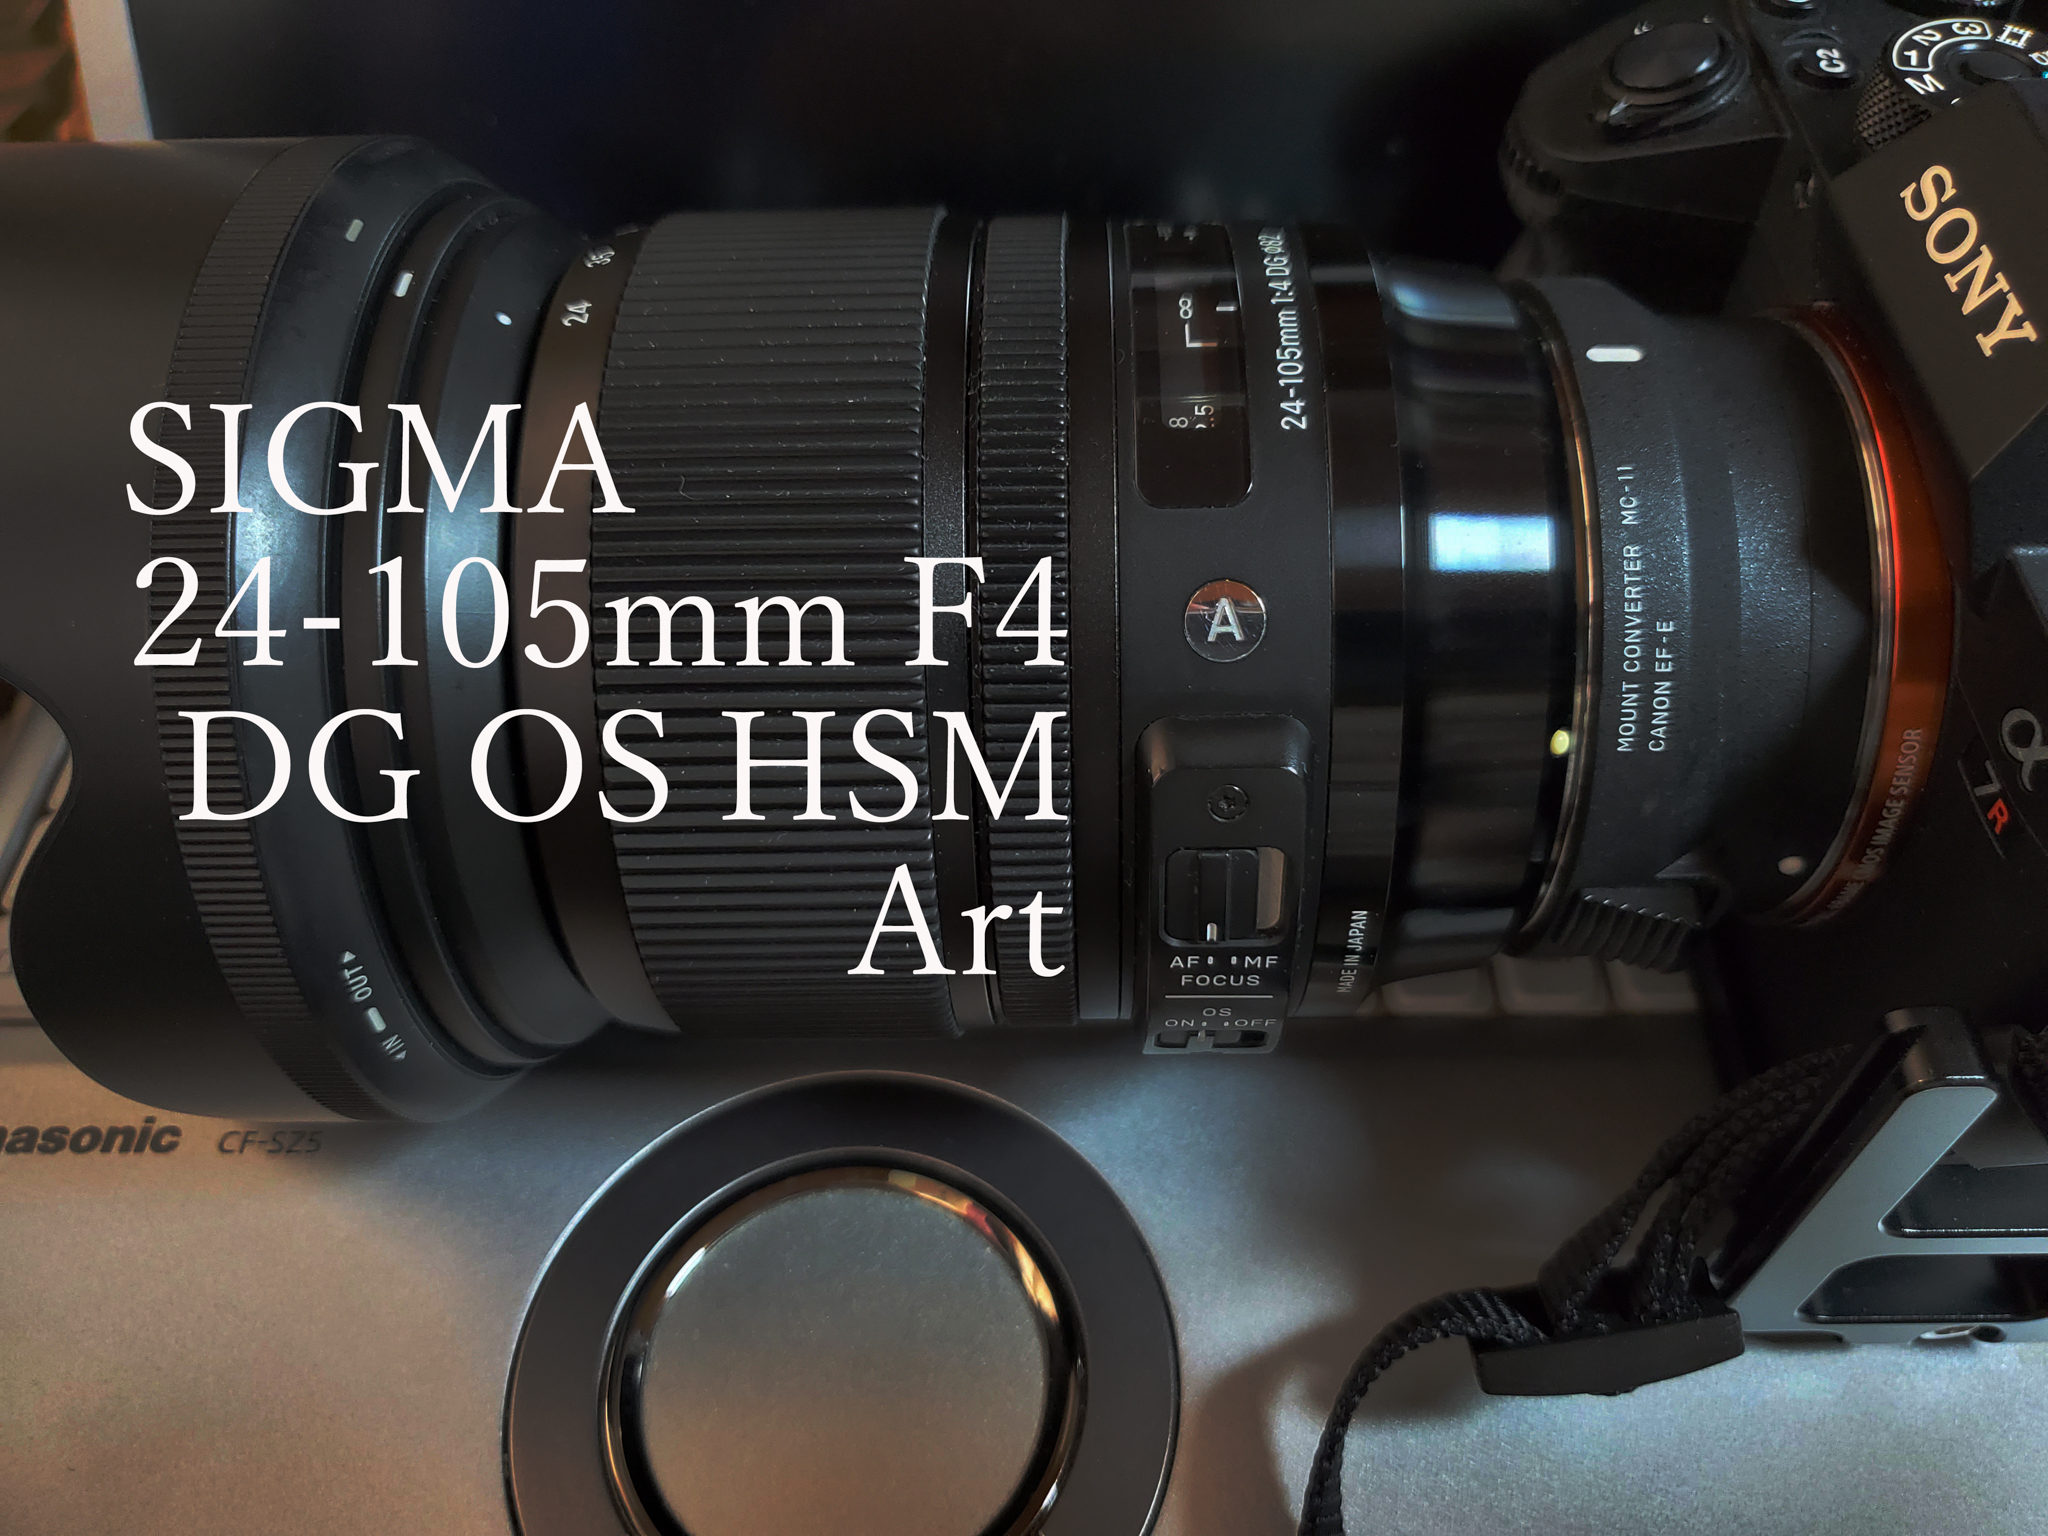 SIGMA 24-105mm F4 DG OS HSM | Art 買いました | すぱ・ぼちぼち写真